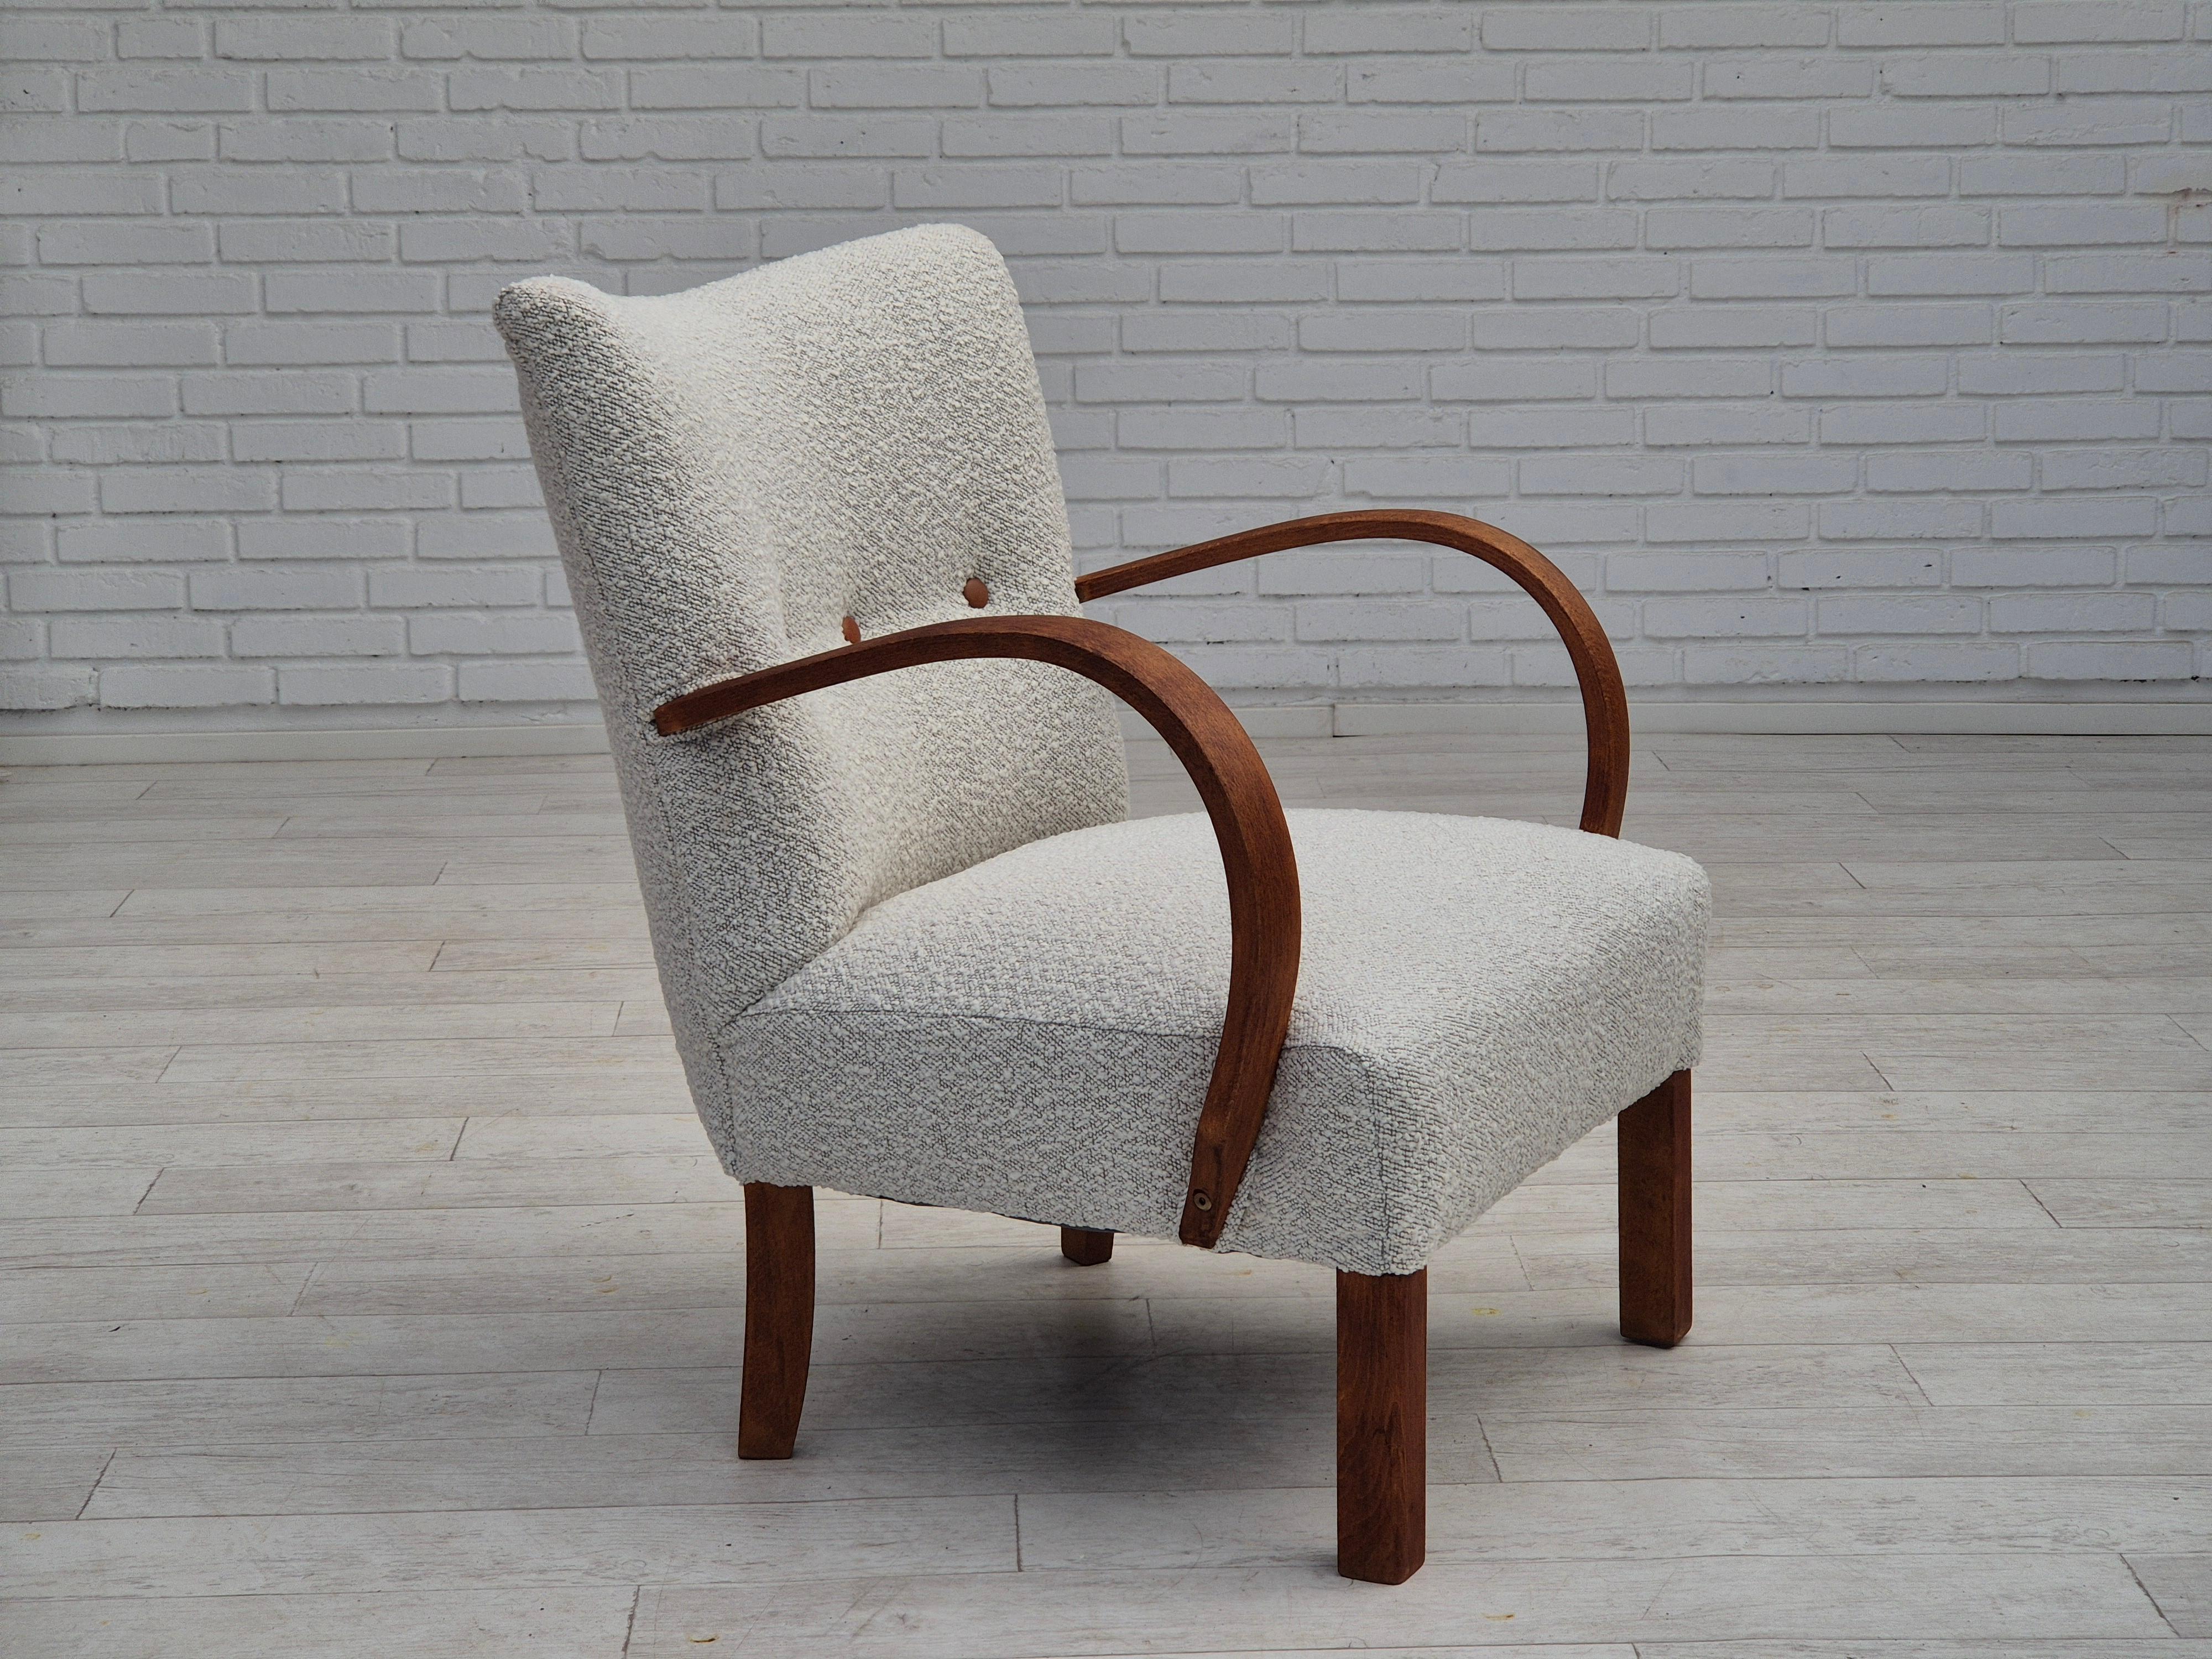 1960er Jahre, dänischer Art-Deco-Sessel. Neu gepolstert mit hochwertigem hellgrau/weißem Möbelstoff, Lederknöpfe. Armlehne und Beine aus Buchenholz erneuert. Die Messingfedern im Sitz bleiben erhalten. Neu gepolstert durch professionellen Polsterer,